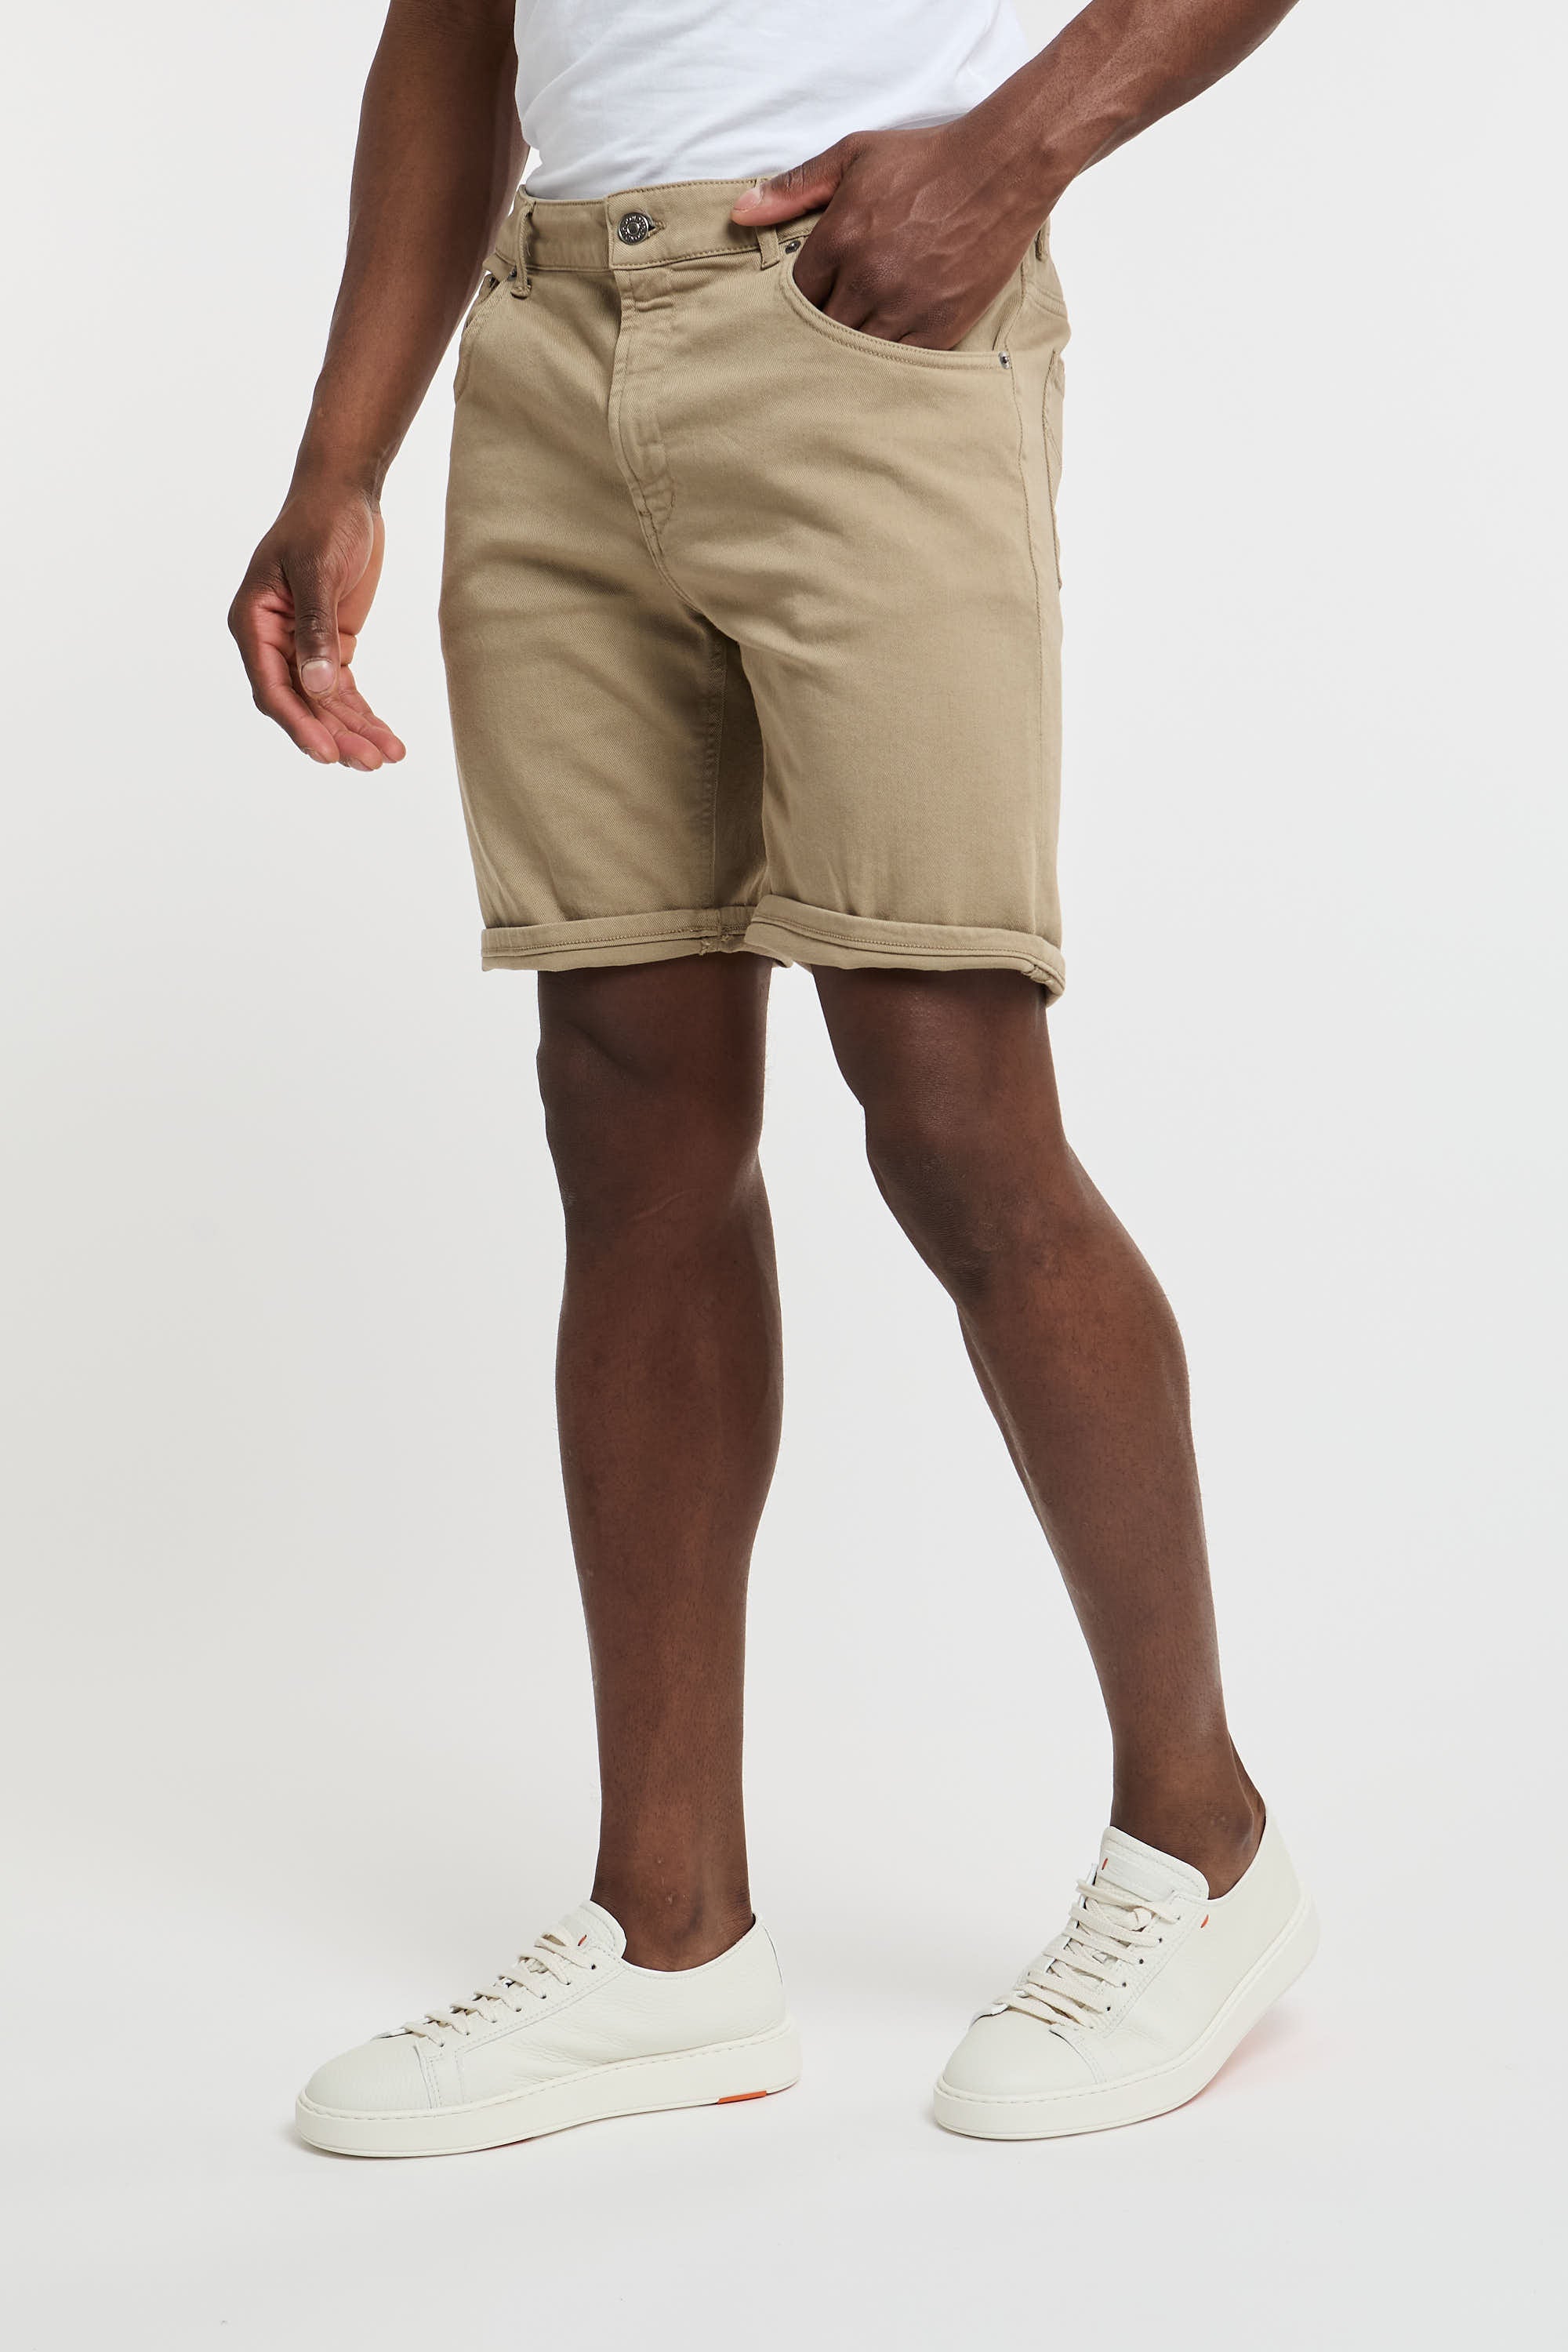 Dondup Derick Beige Cotton Bermuda Shorts-1